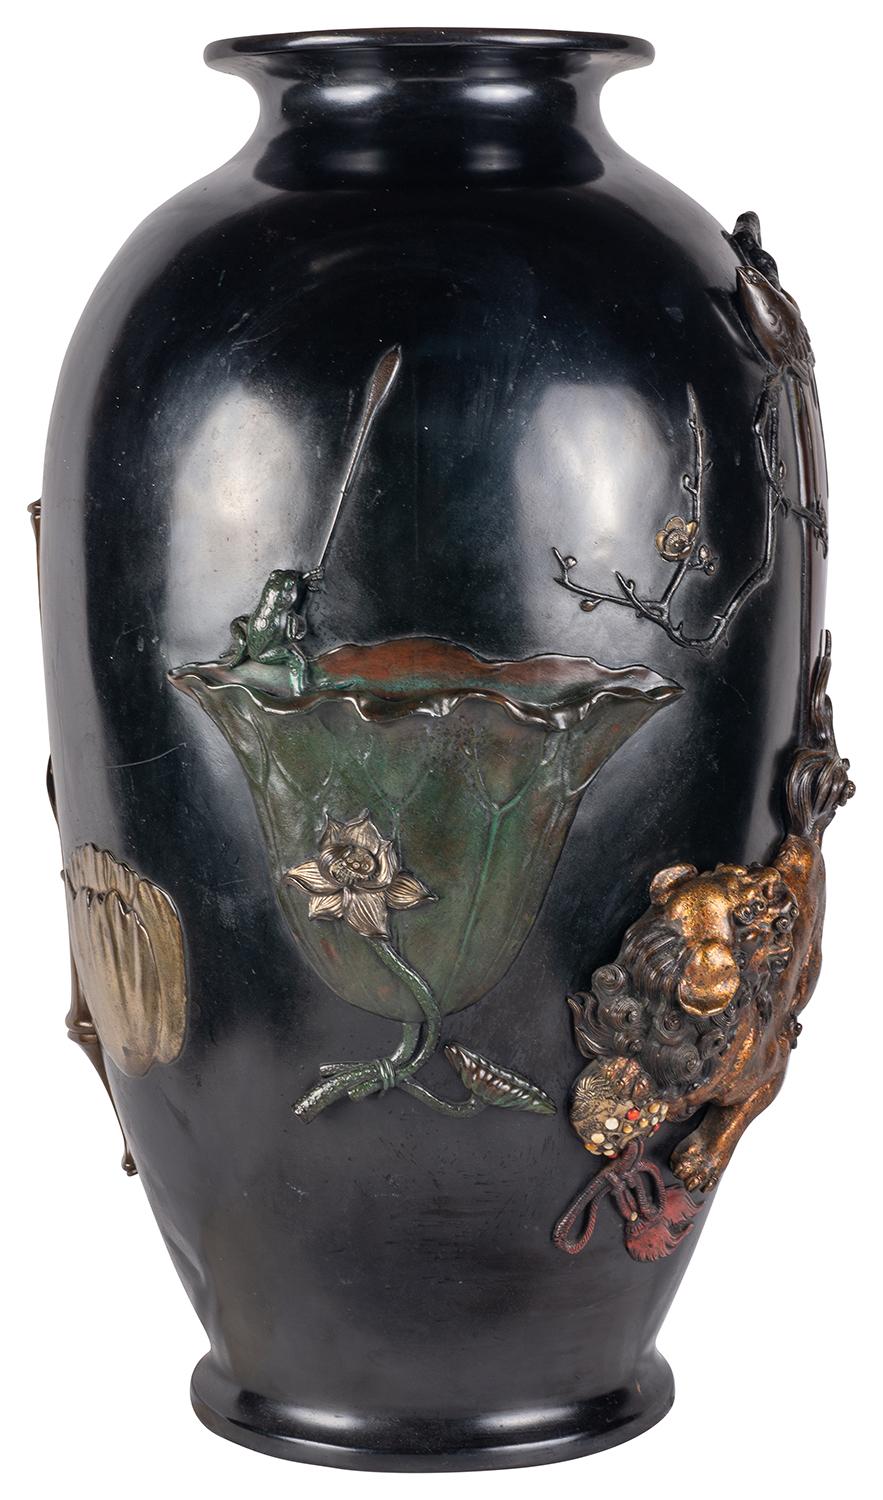 Un meraviglioso vaso giapponese del periodo Meiji (1868-1912) con sovrapposizione di bronzo. Con scene squisite e divertenti in rilievo, patinate e sovrapposte di un Cane di Foo, una Rana che pesca in una coppa di foglie di Loto, un vaso e un